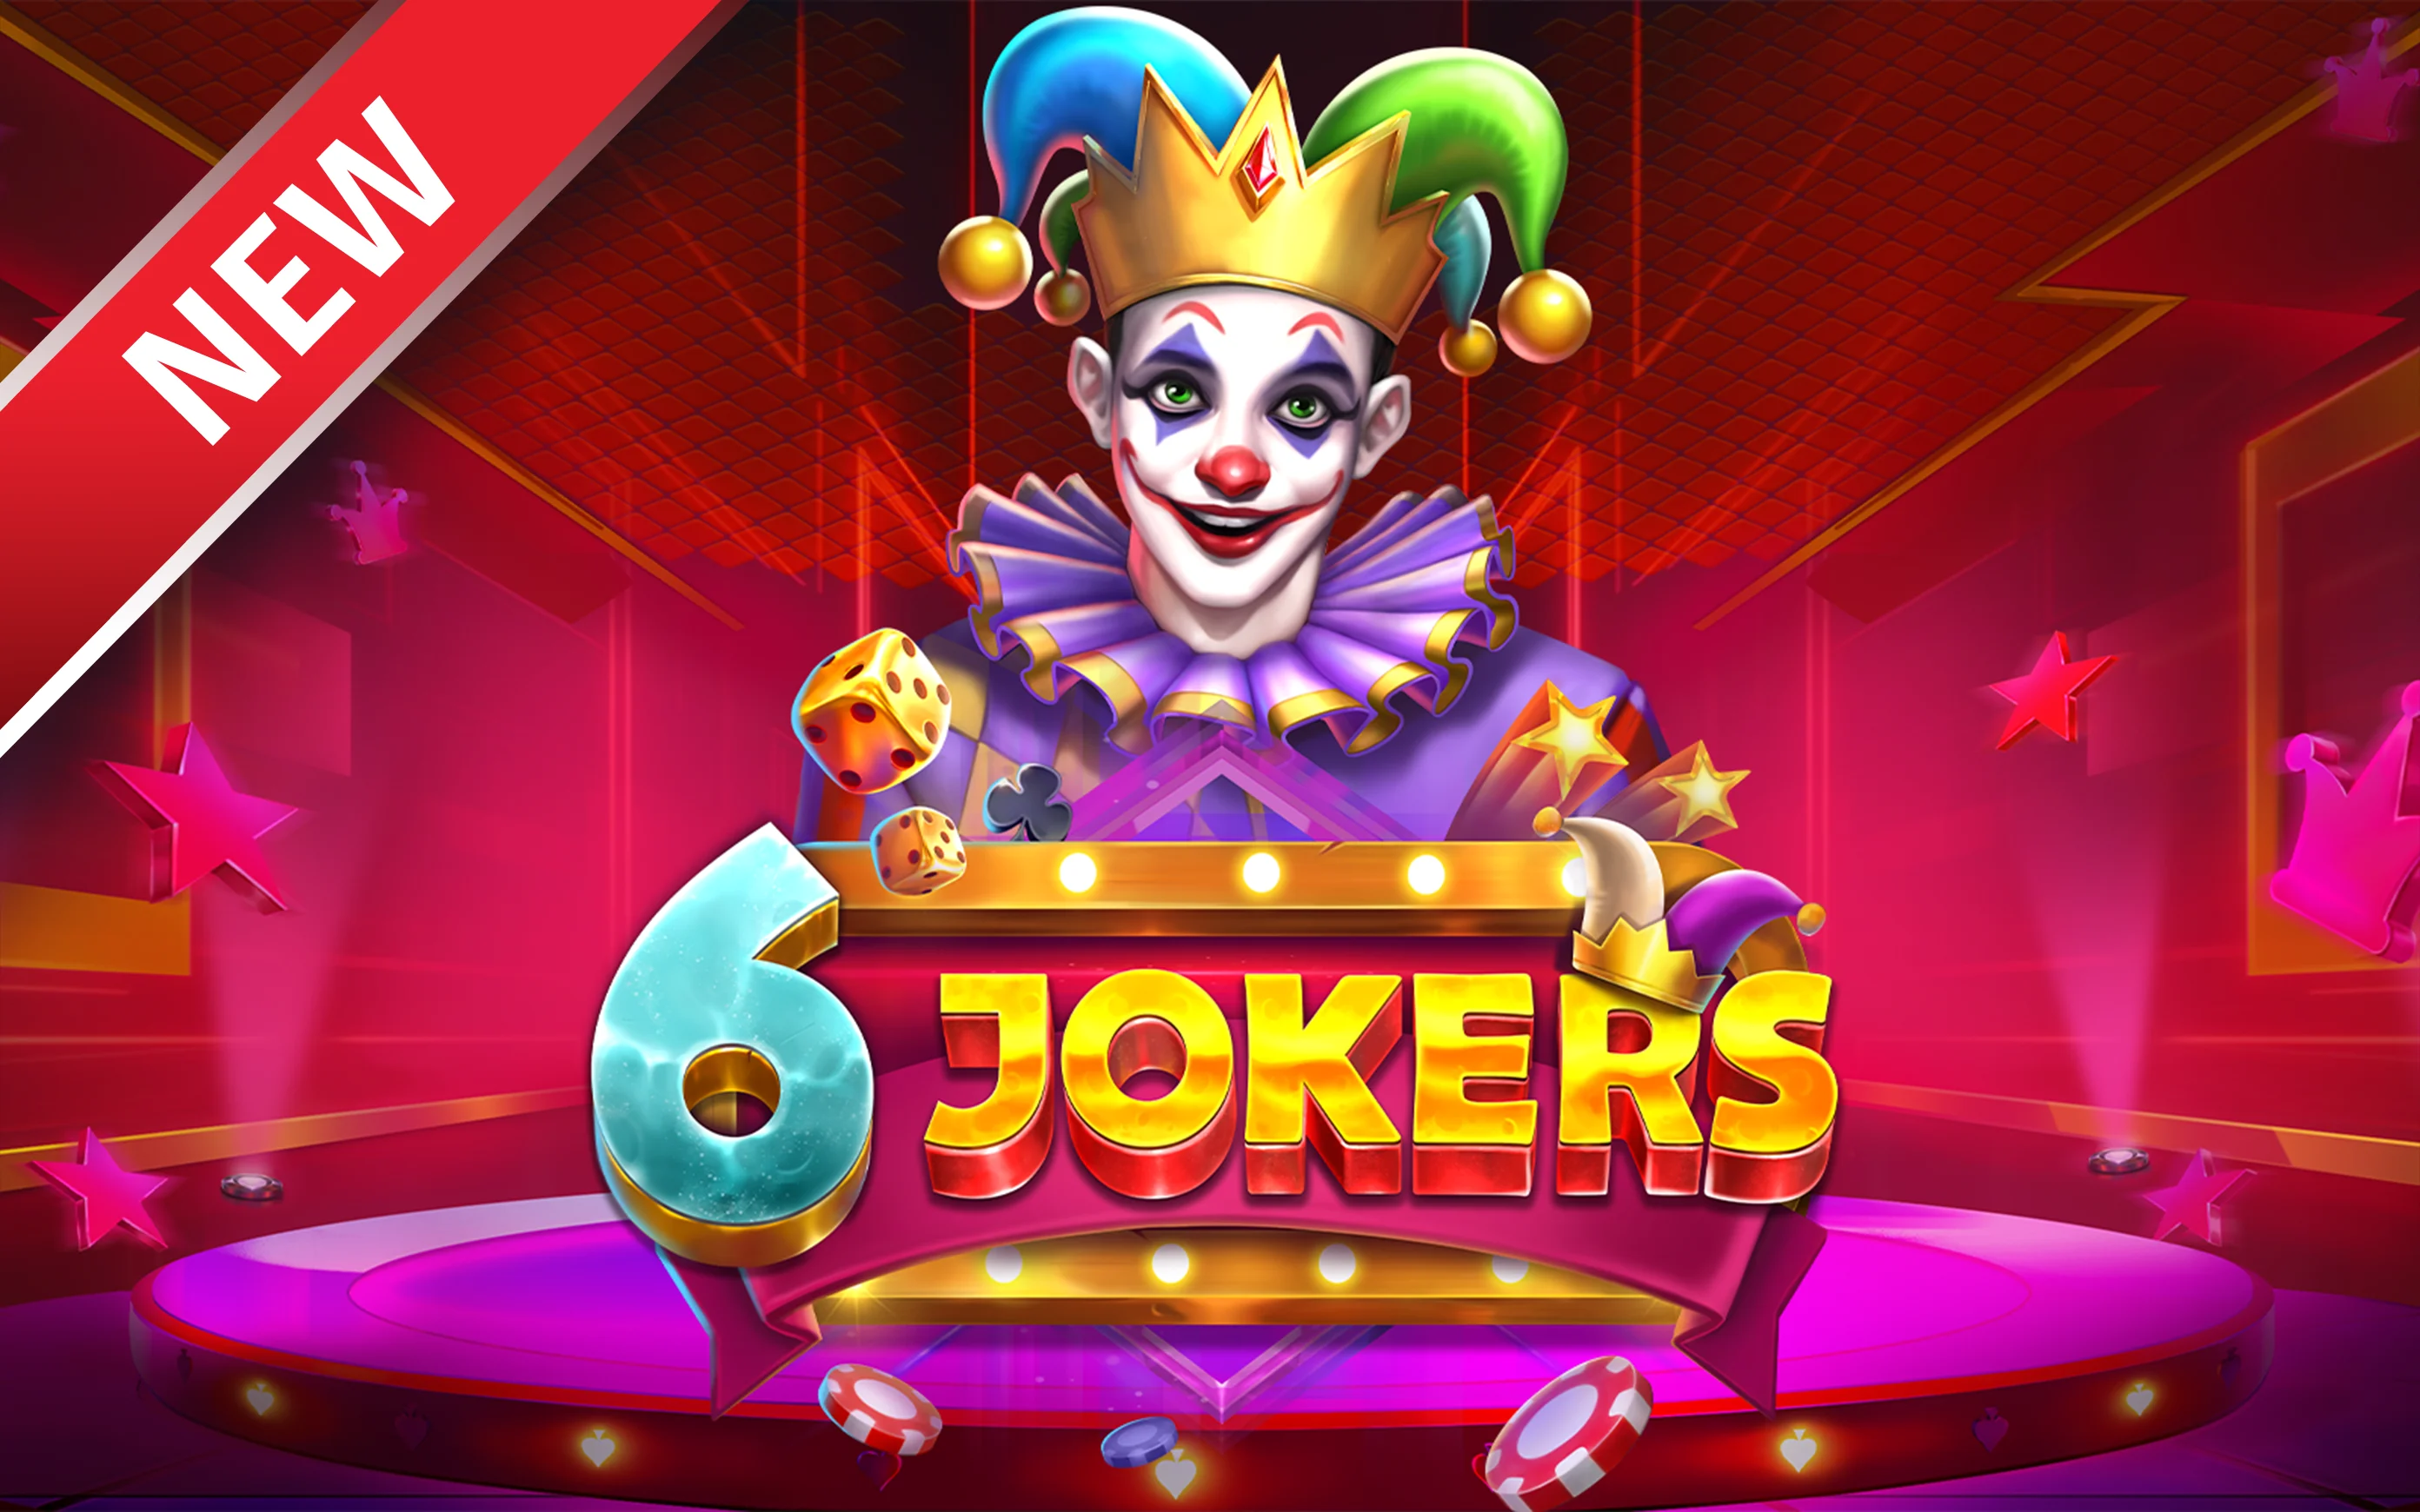 Starcasino.be online casino üzerinden 6 Jokers oynayın